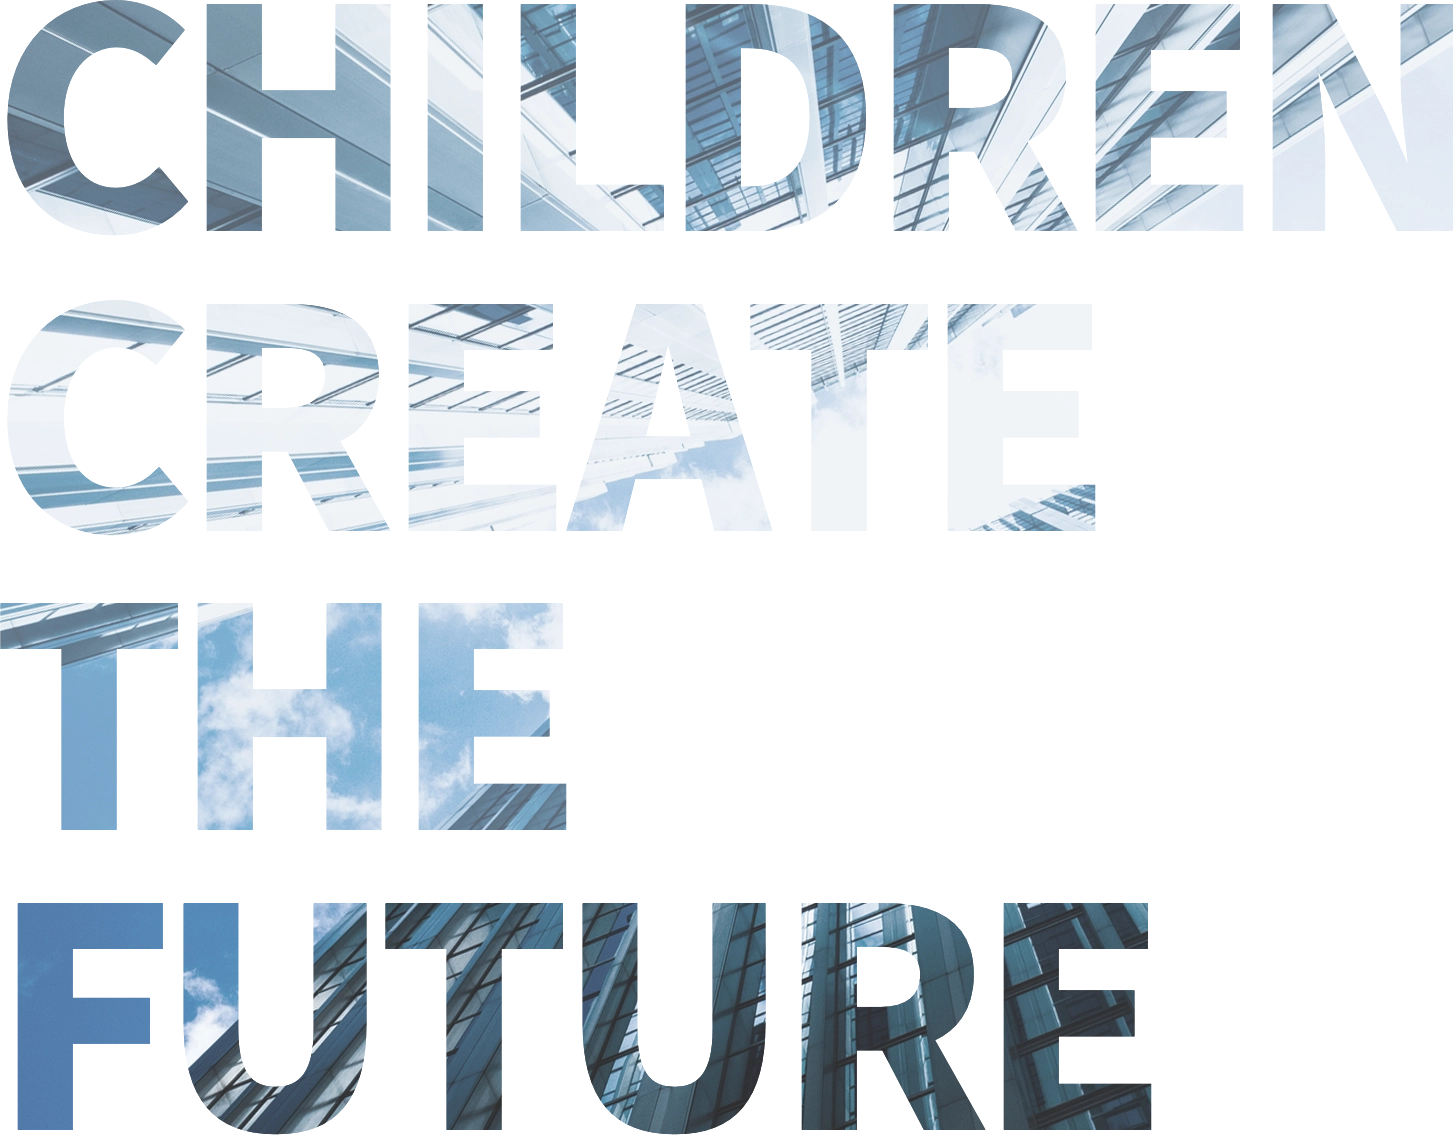 CHILDREN CREATE THE FUTURE